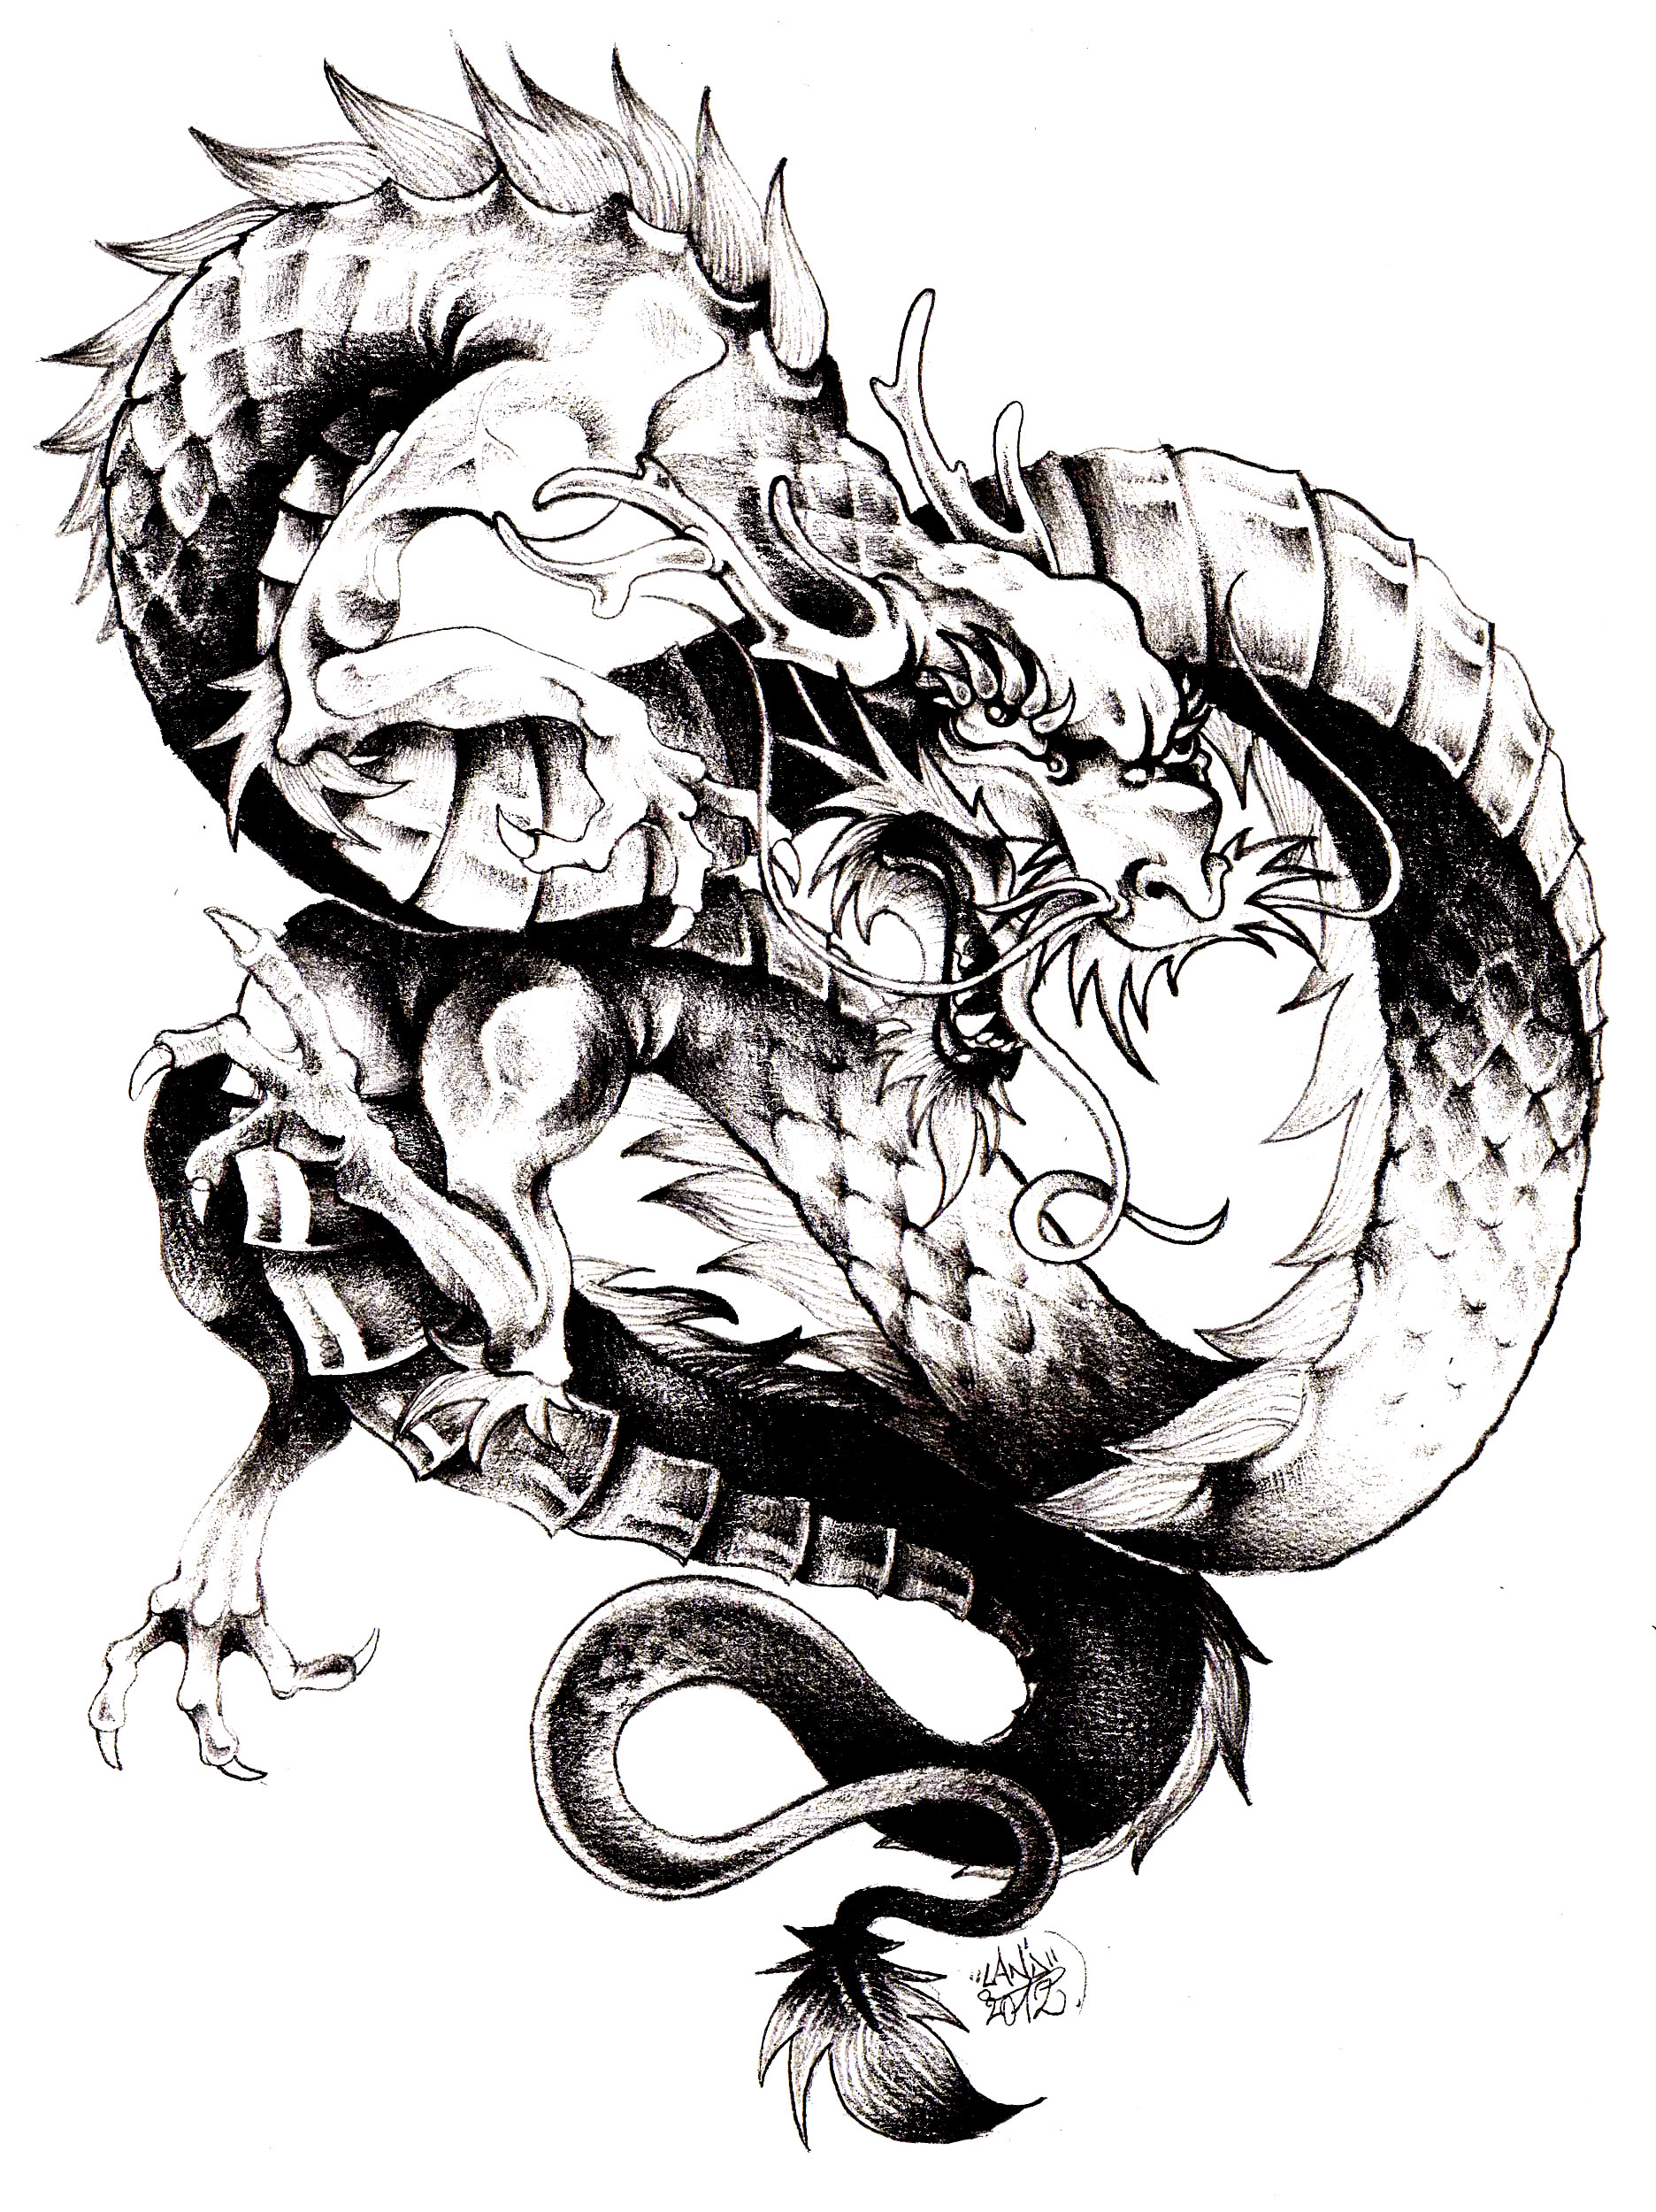 Il drago, uno dei principali simboli della Cina